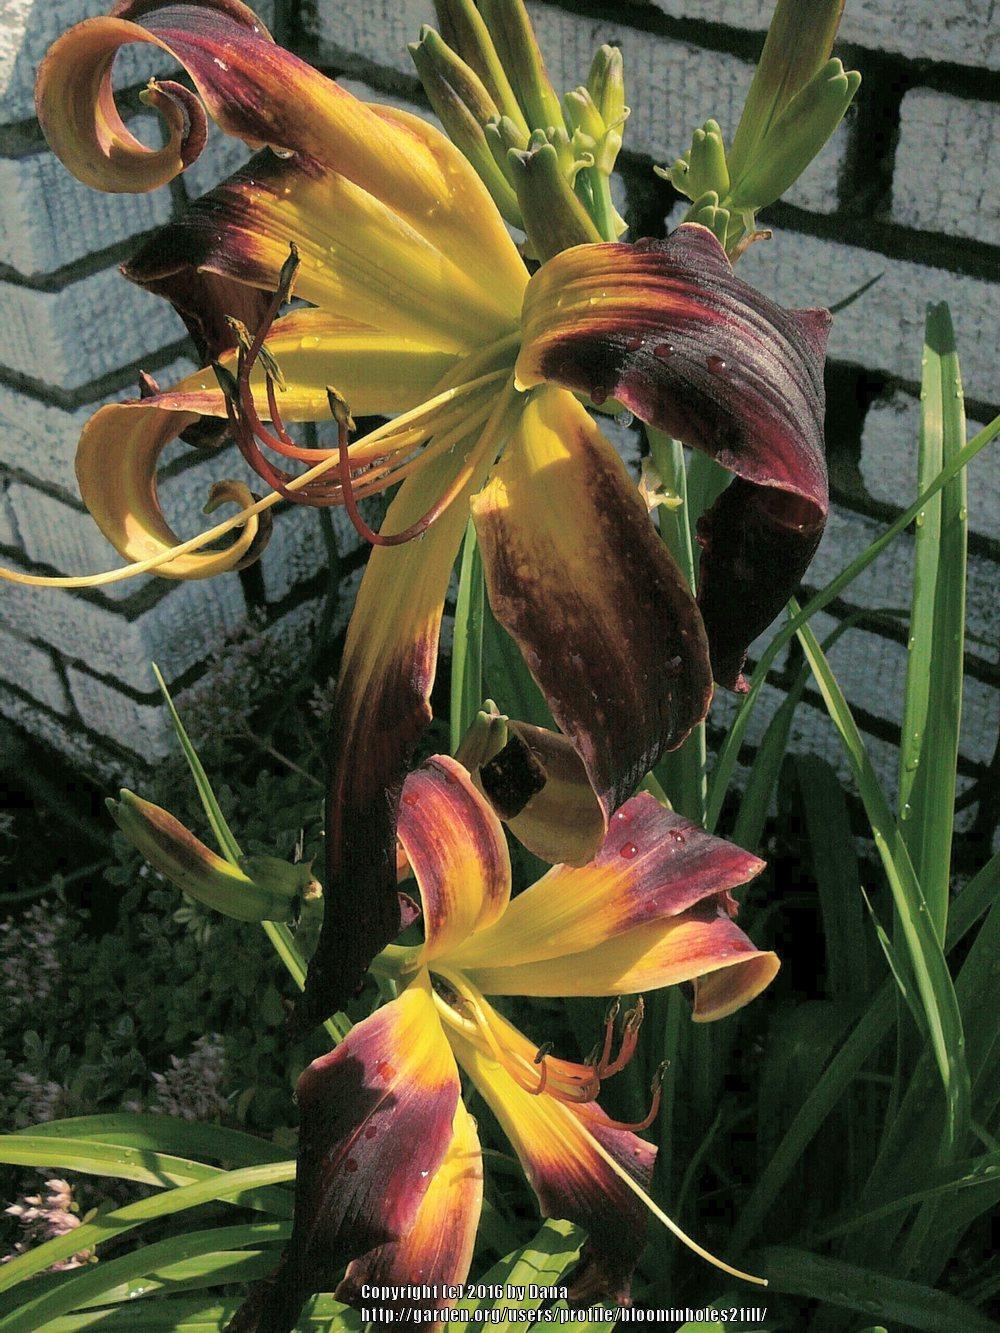 Photo of Daylily (Hemerocallis 'Helix') uploaded by bloominholes2fill